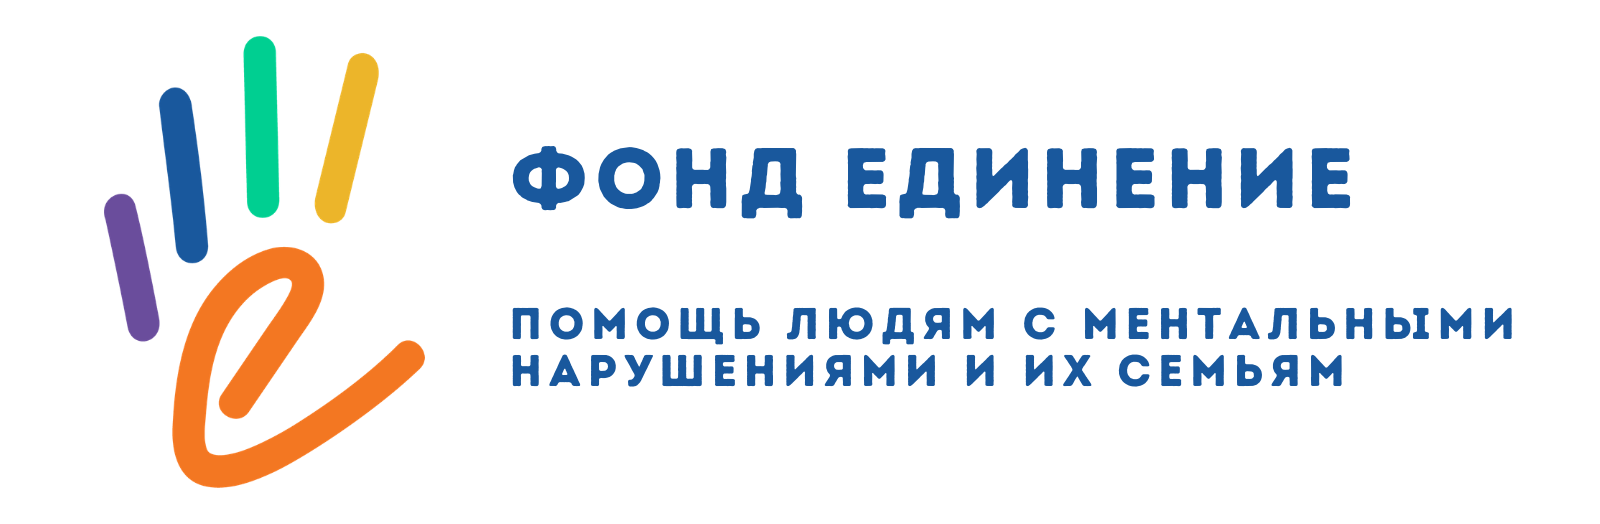 Логотип фонда: Единение